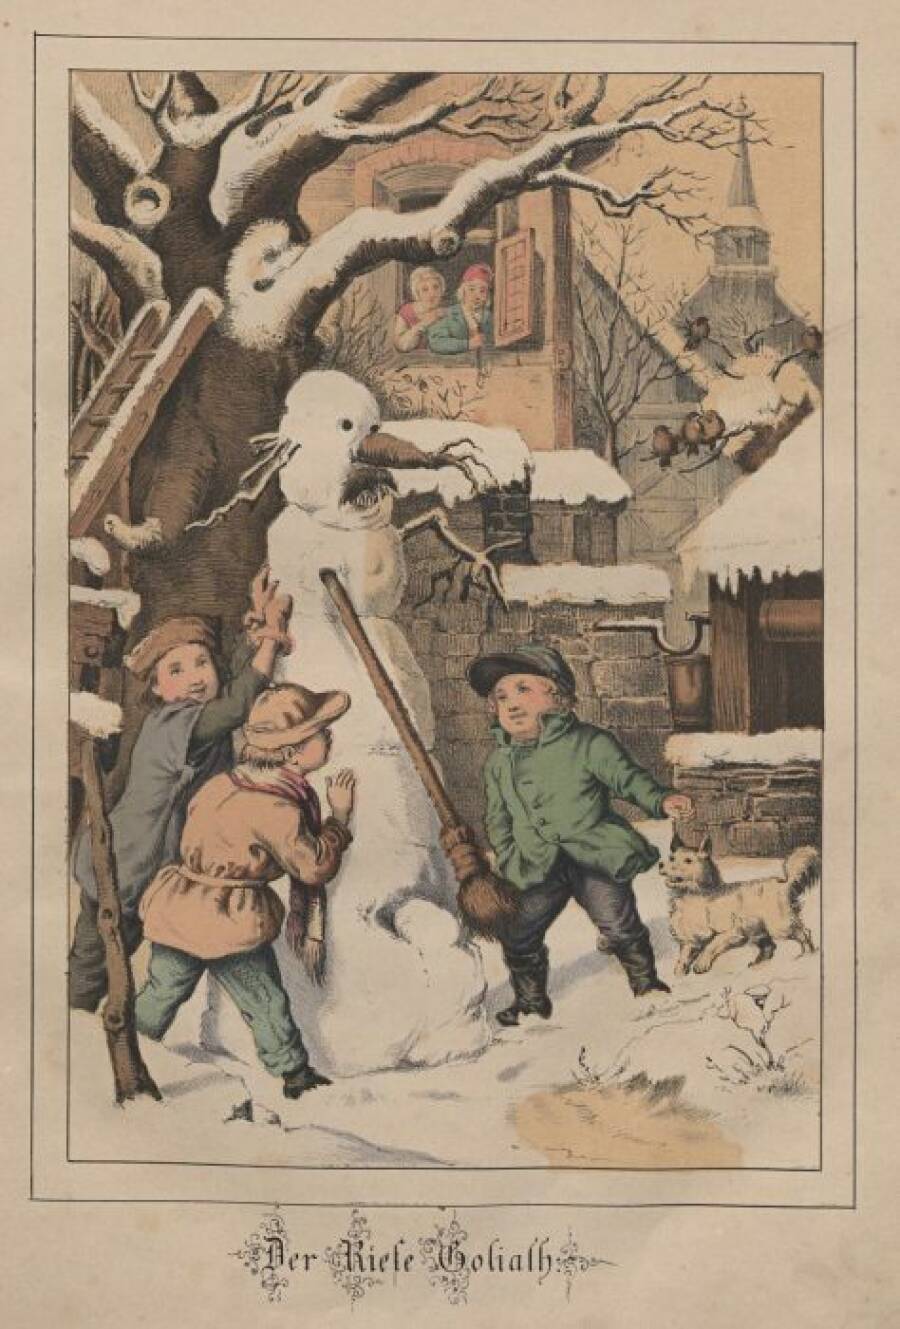 Снеговик по имени Голиаф. Иллюстрация Франца Видемана, 1860 г.